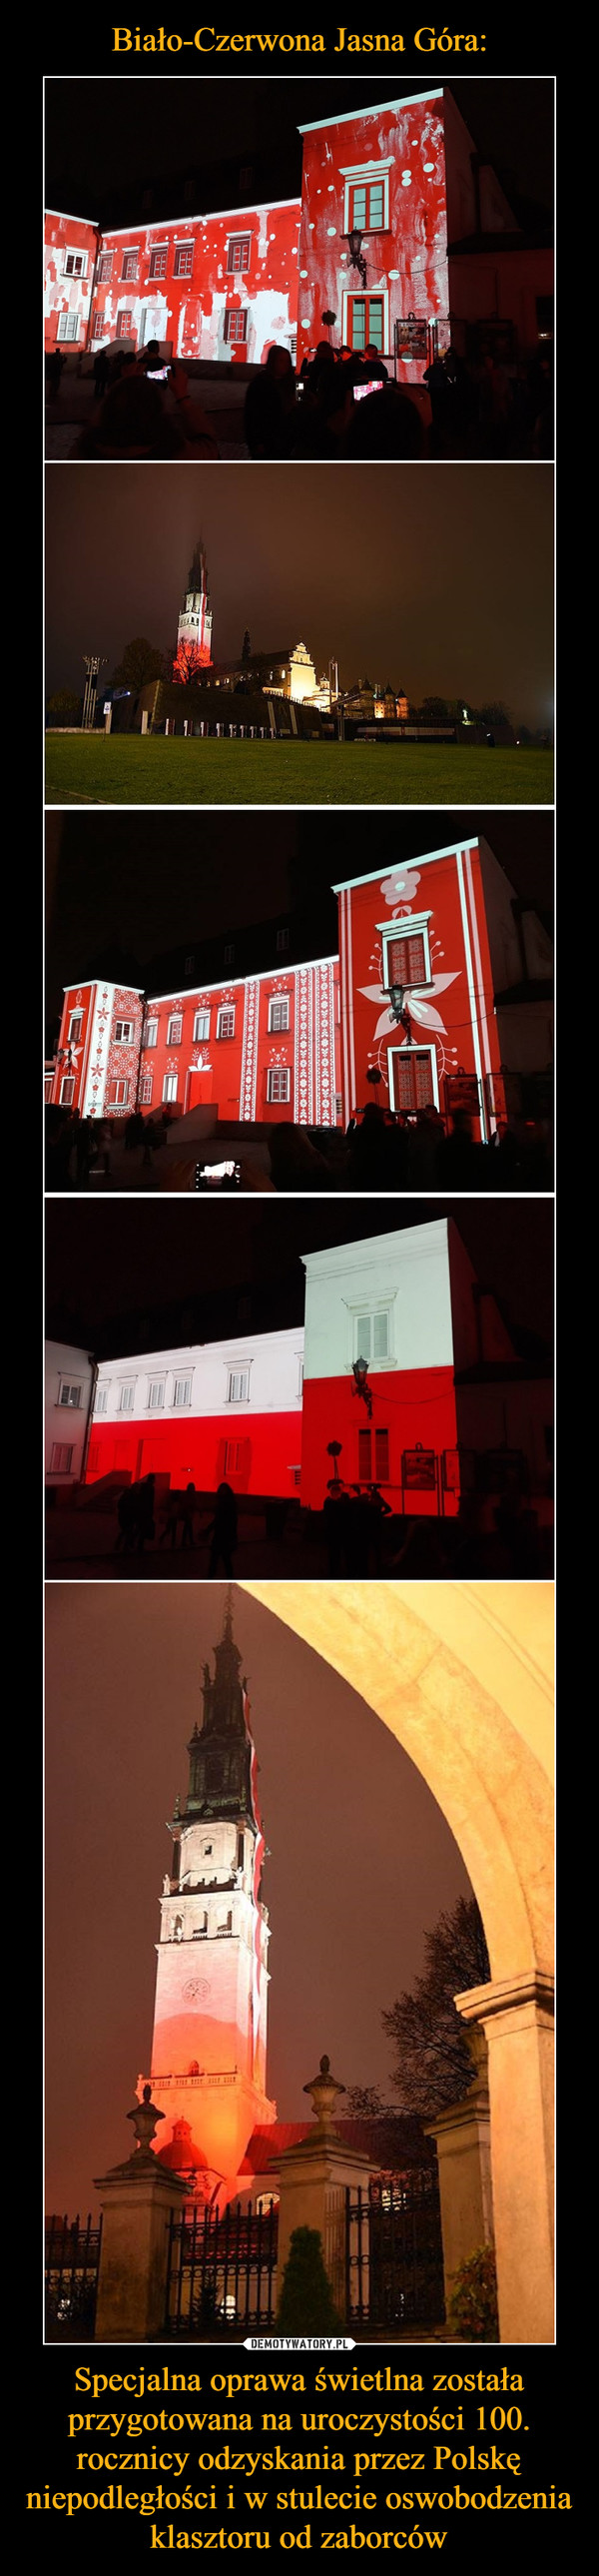 Specjalna oprawa świetlna została przygotowana na uroczystości 100. rocznicy odzyskania przez Polskę niepodległości i w stulecie oswobodzenia klasztoru od zaborców –  